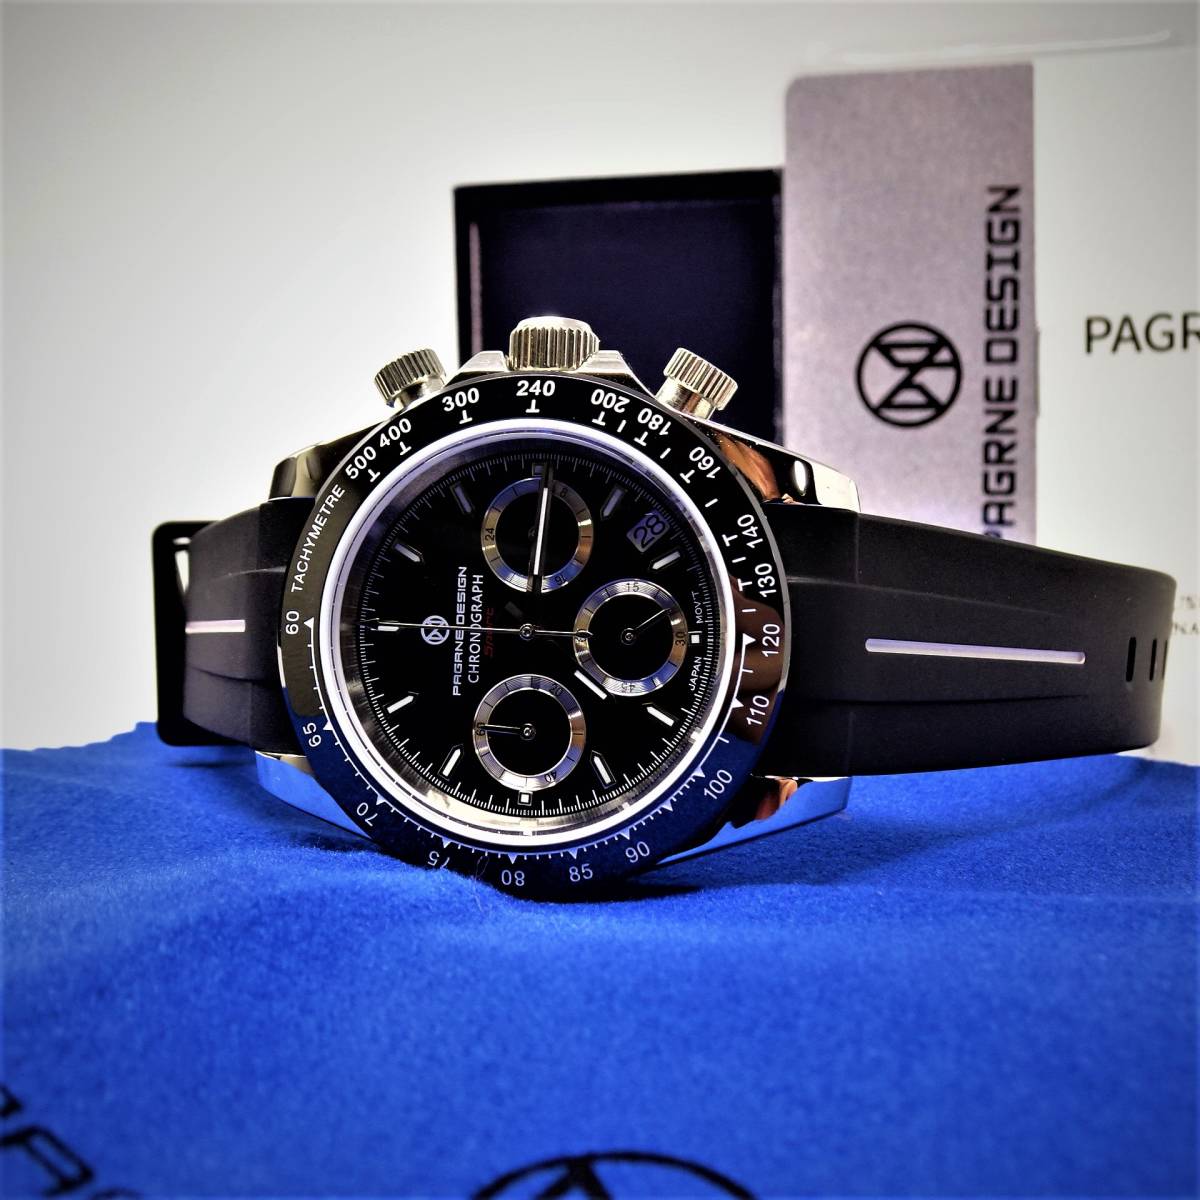 新品・パガーニデザイン・メンズ・セイコー製VK63クロノグラフクオーツ式腕時計 ・オマージュウオッチ・ブラックラバーストラップベルト